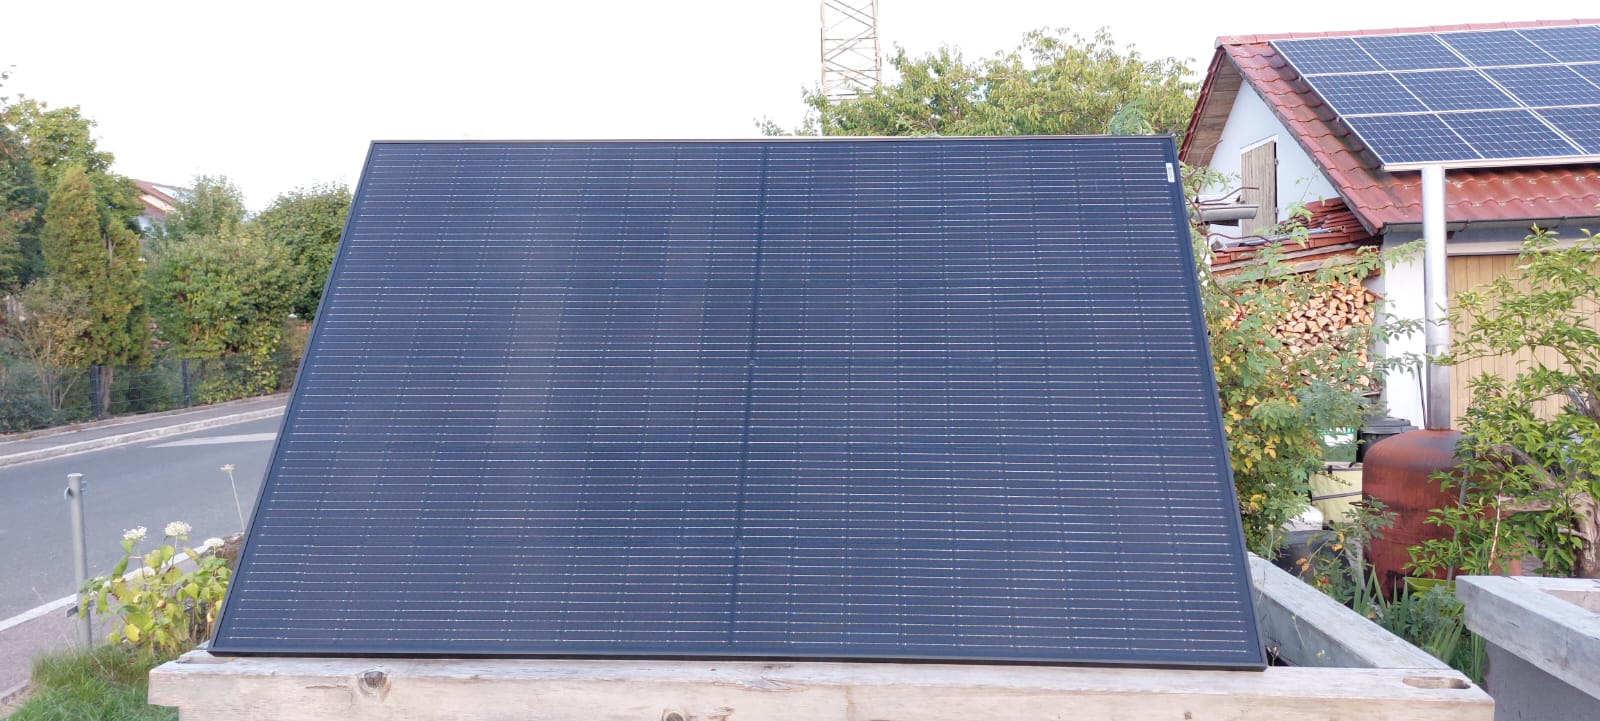 Ein PV-Balkonkraftwerk verwandelt die Sonnenenergie in Strom, der ganz einfach für den privaten Verbrauch genutzt werden kann Foto: Franz Bleicher